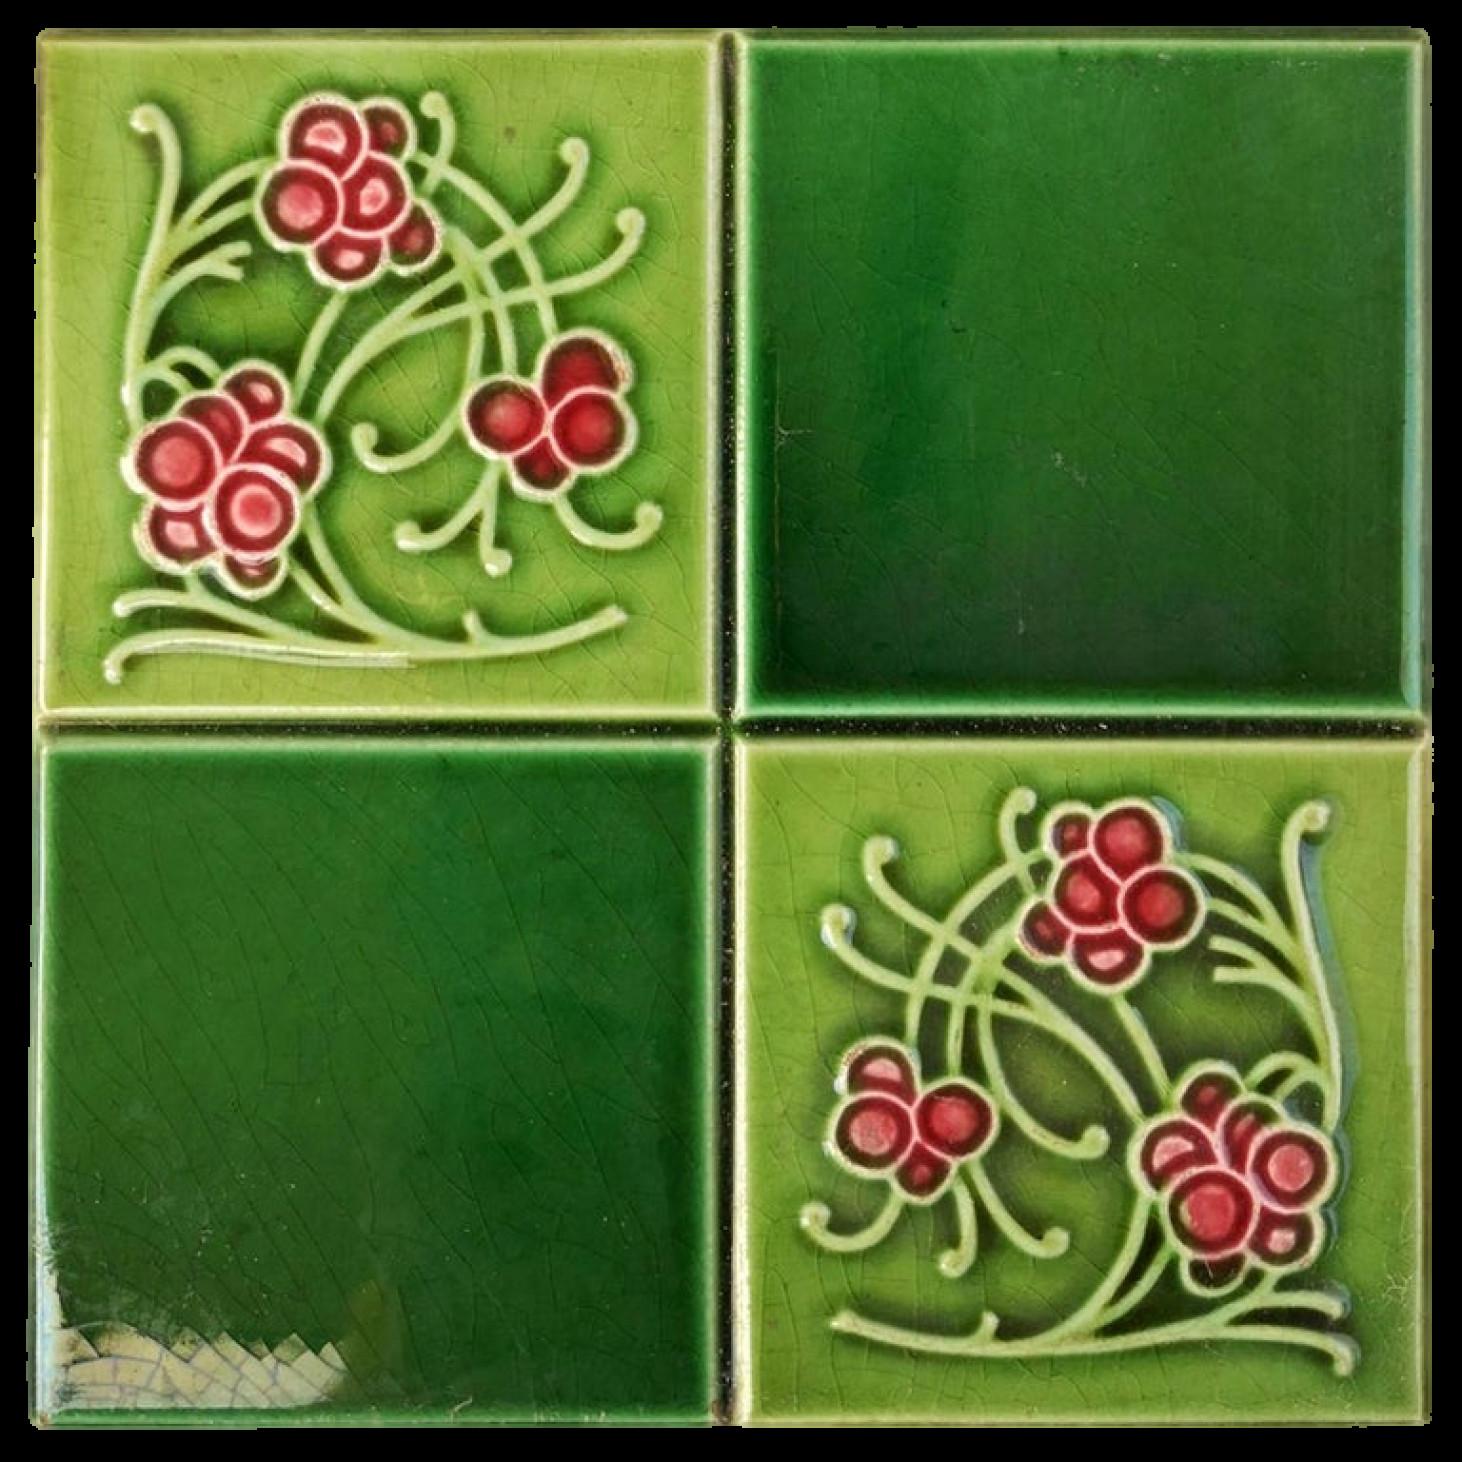 1 des 30 carreaux étonnants dans des couleurs vertes et roses vives. Chaque tuile est divisée en quatre faces. Fabriqué vers 1925 par Gilliot Frères, Hemiksem, Belgique. Ces carreaux seraient charmants exposés sur des chevalets, encadrés ou